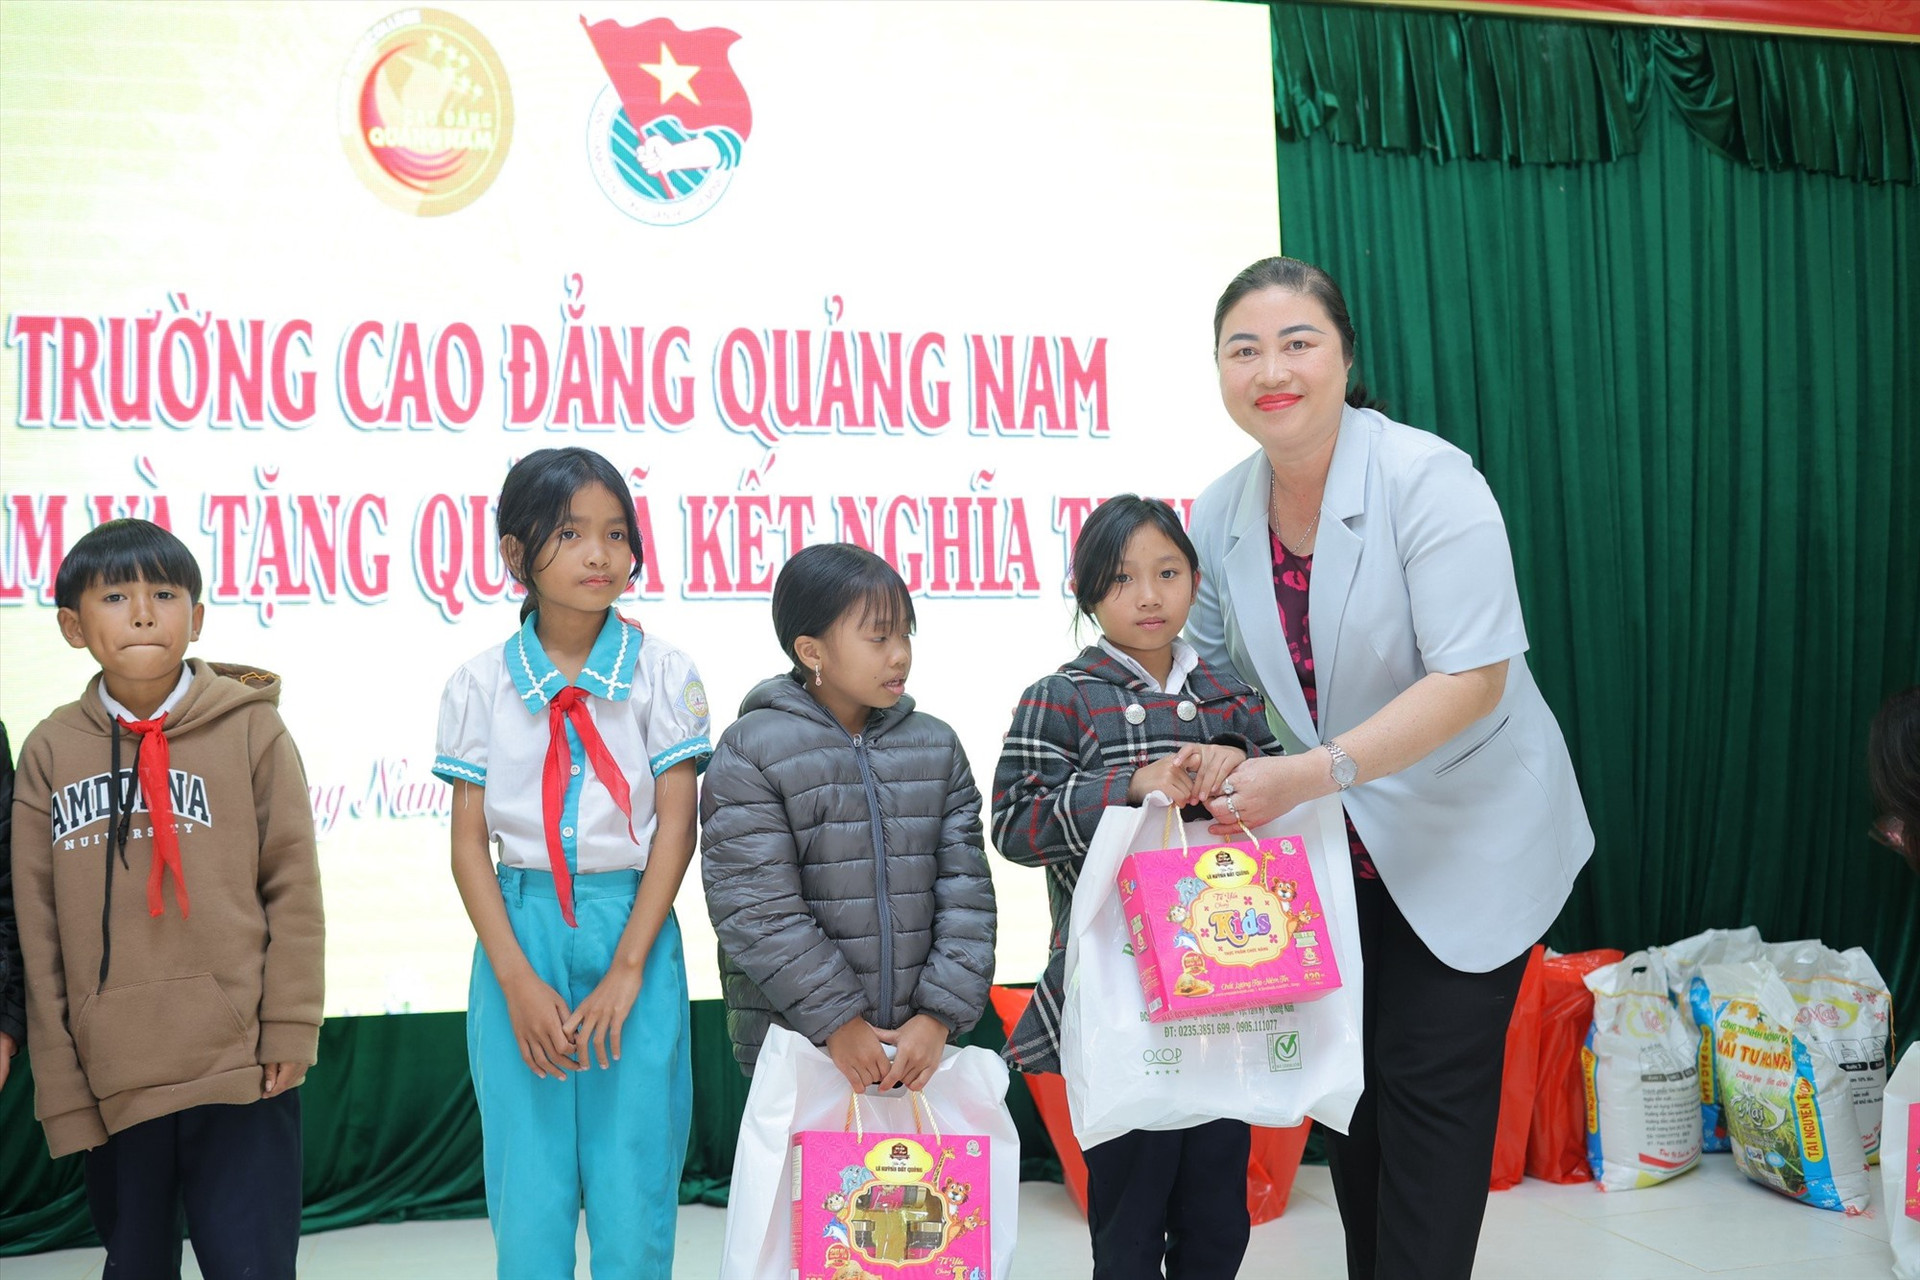 Hiệu trưởng Trường Cao đẳng Quảng Nam Vũ Thị Phương Anh tặng quà tết cho trẻ em. Ảnh: D.L